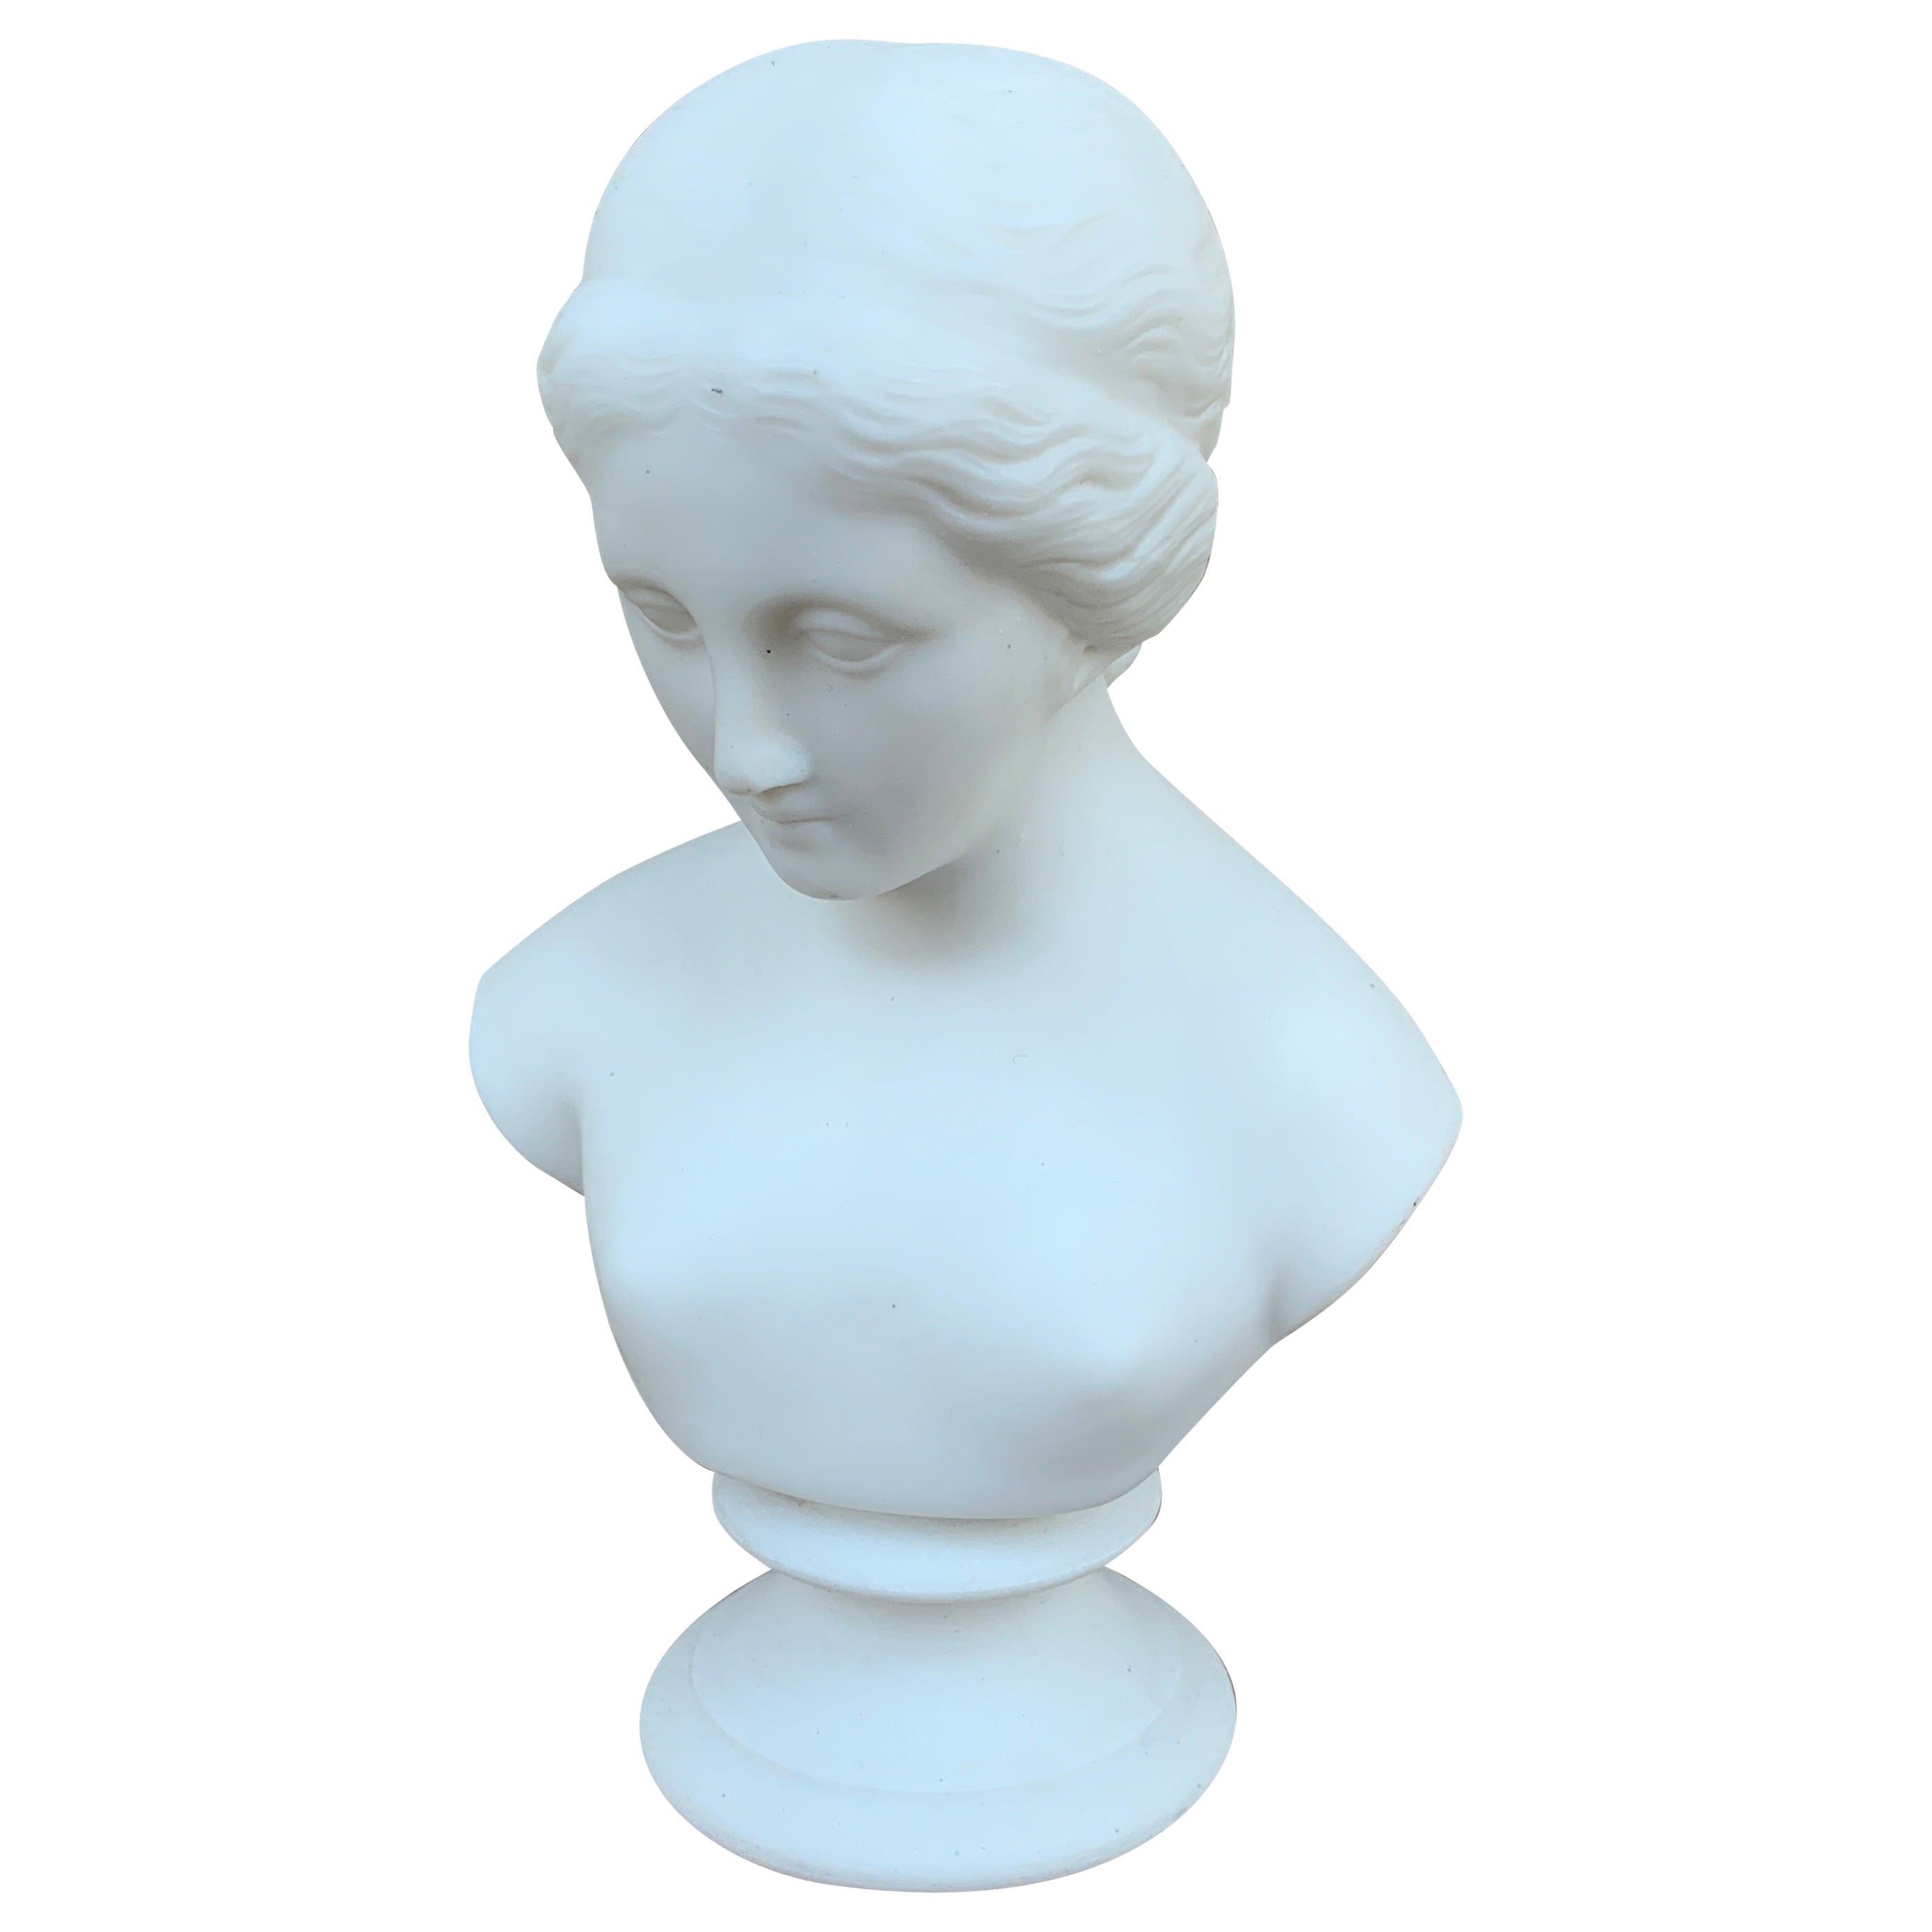 Vintage Classical Female Parian Porcelain Bust Sculpture For Sale